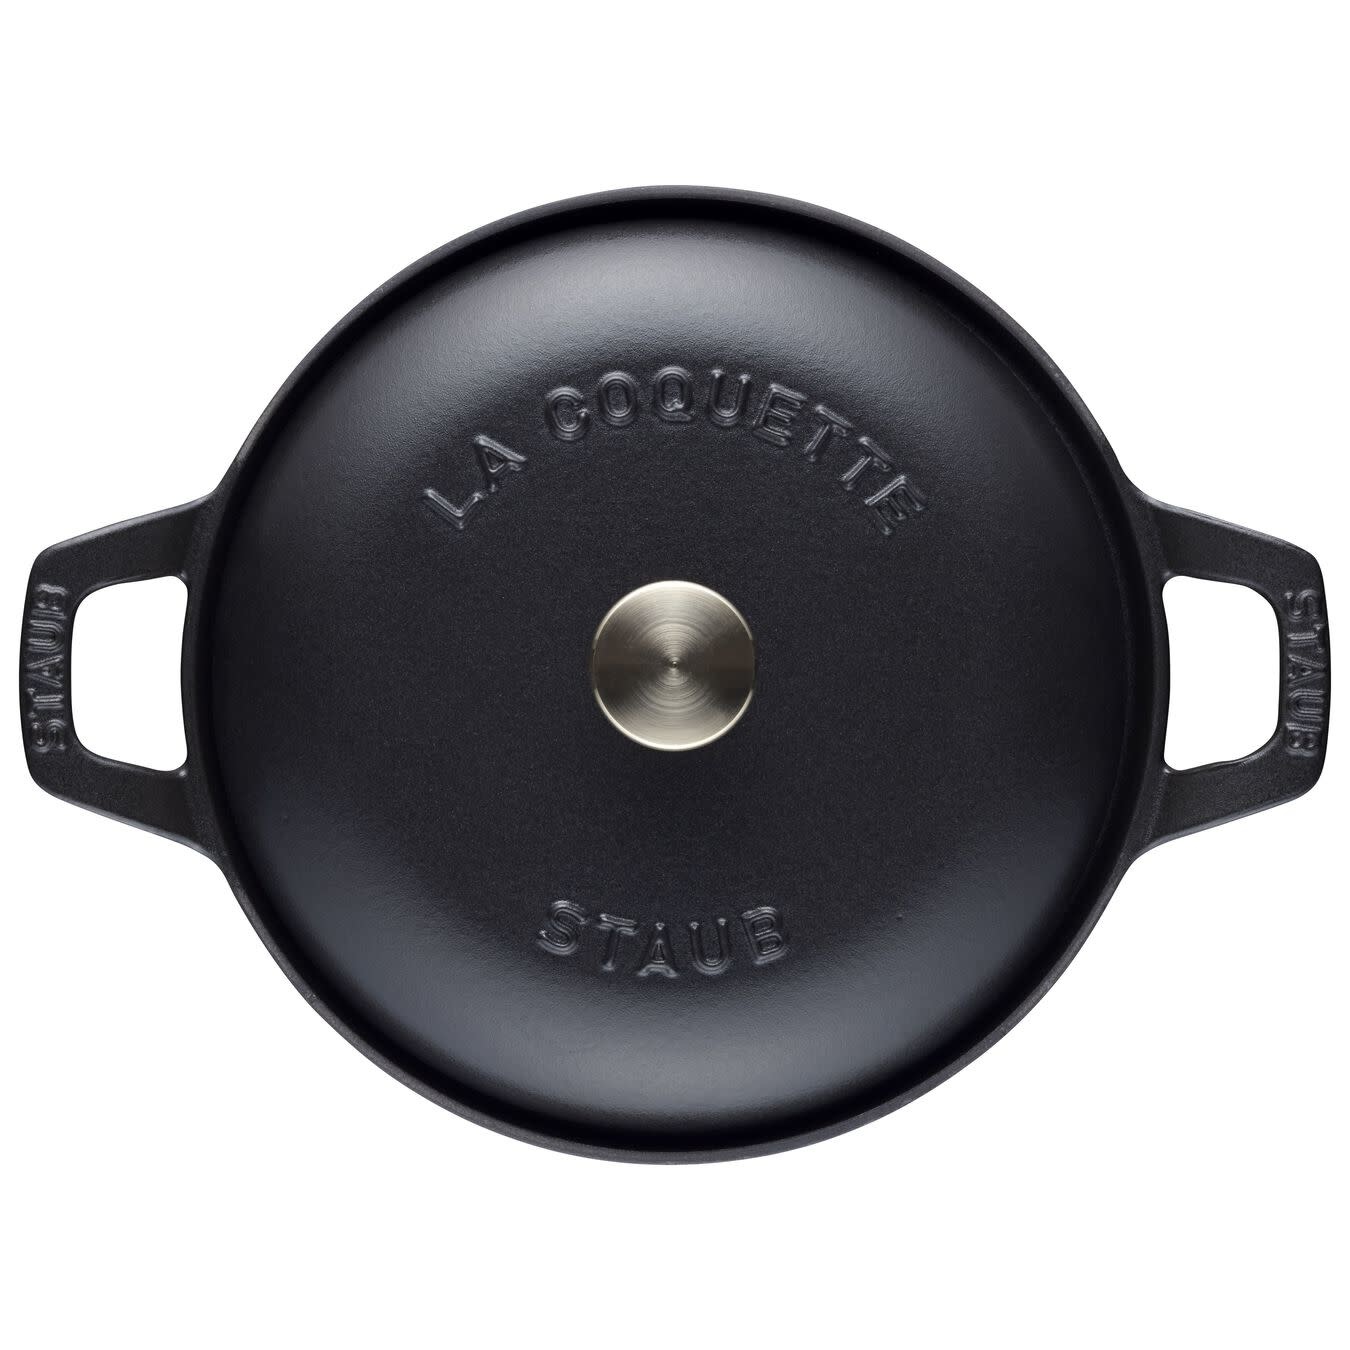 Vintage La Coquette casserole dish round 2.45 L, Black